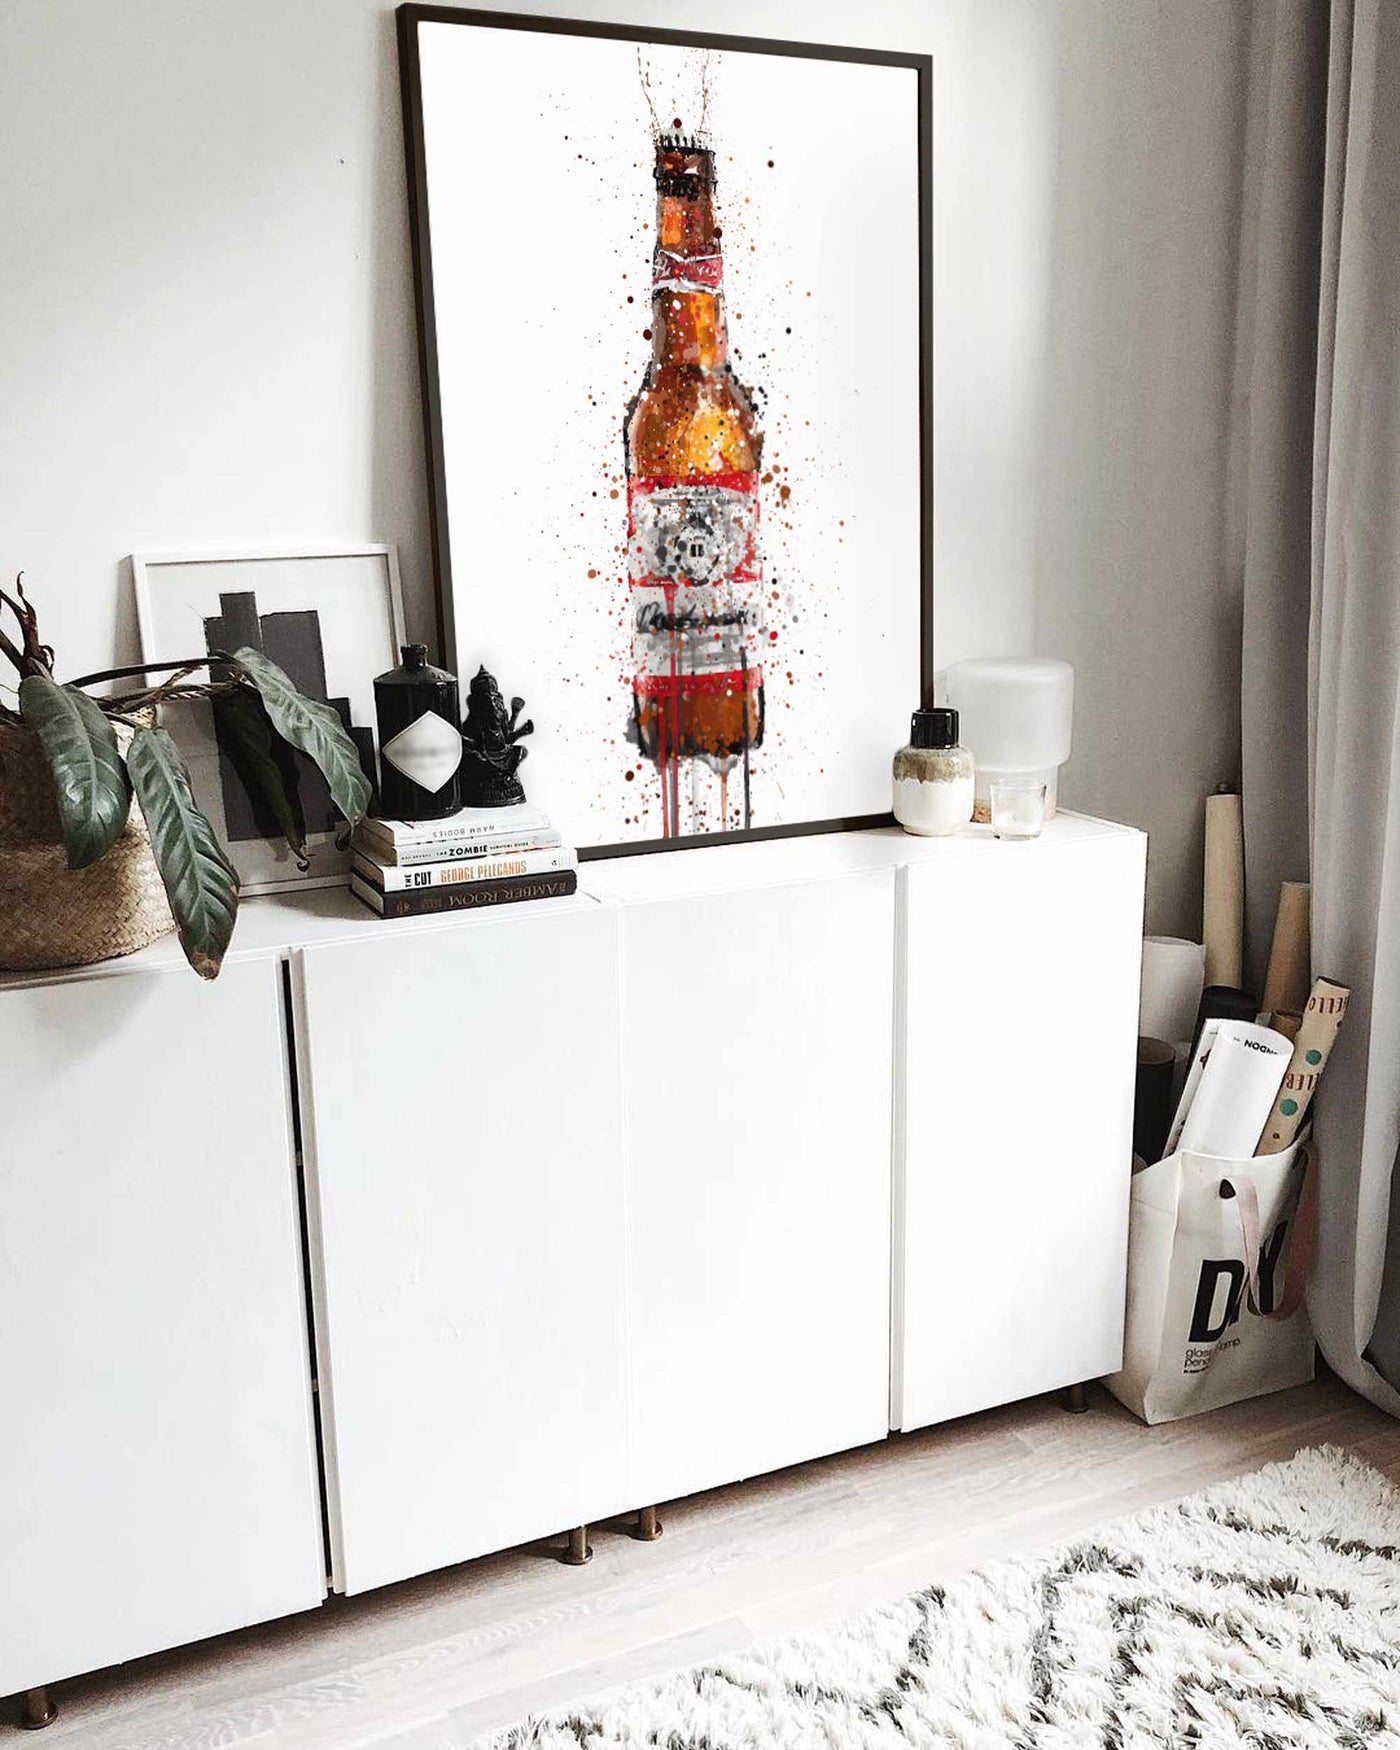 Beer Bottle Wall Art Print 'Amber'-We Love Prints